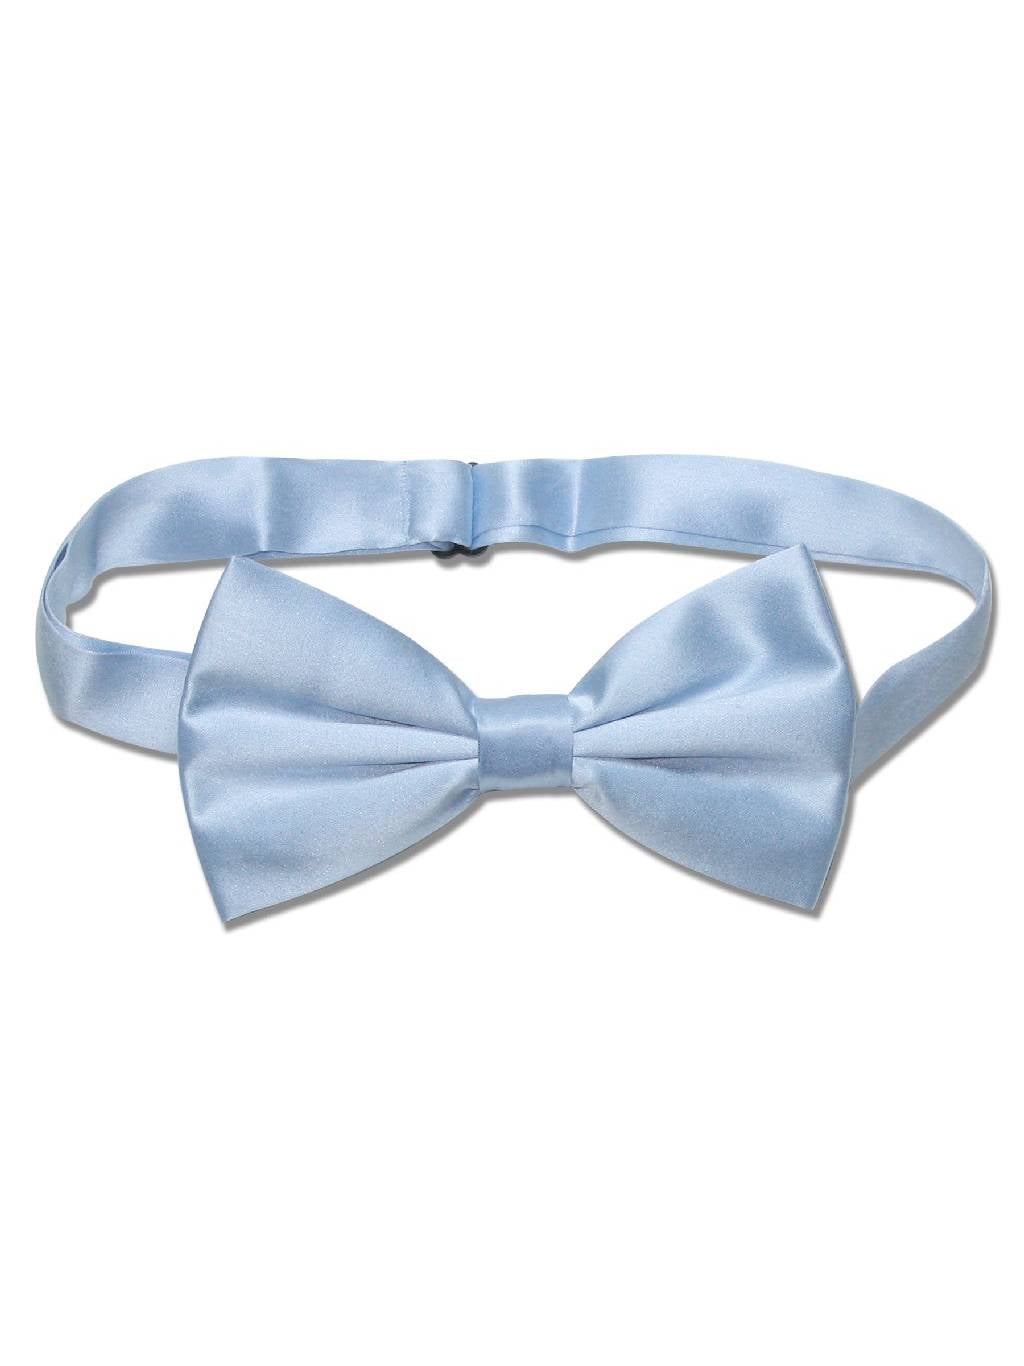 Premium Satin Classic design Men's Self Tie Bow Tie 